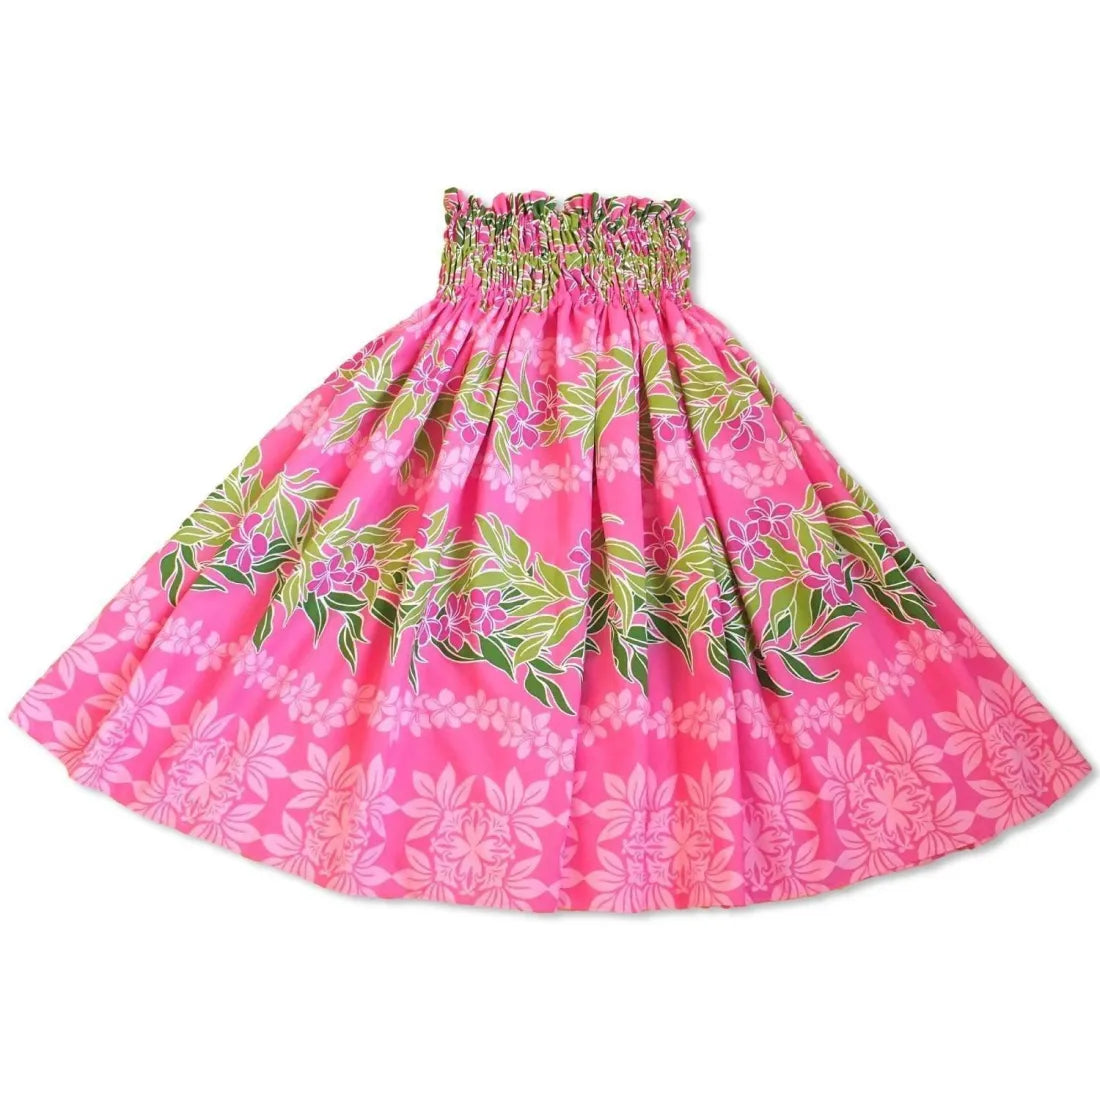 Tidepool Pink Single Pa’u Hawaiian Hula Skirt - Made In Hawaii